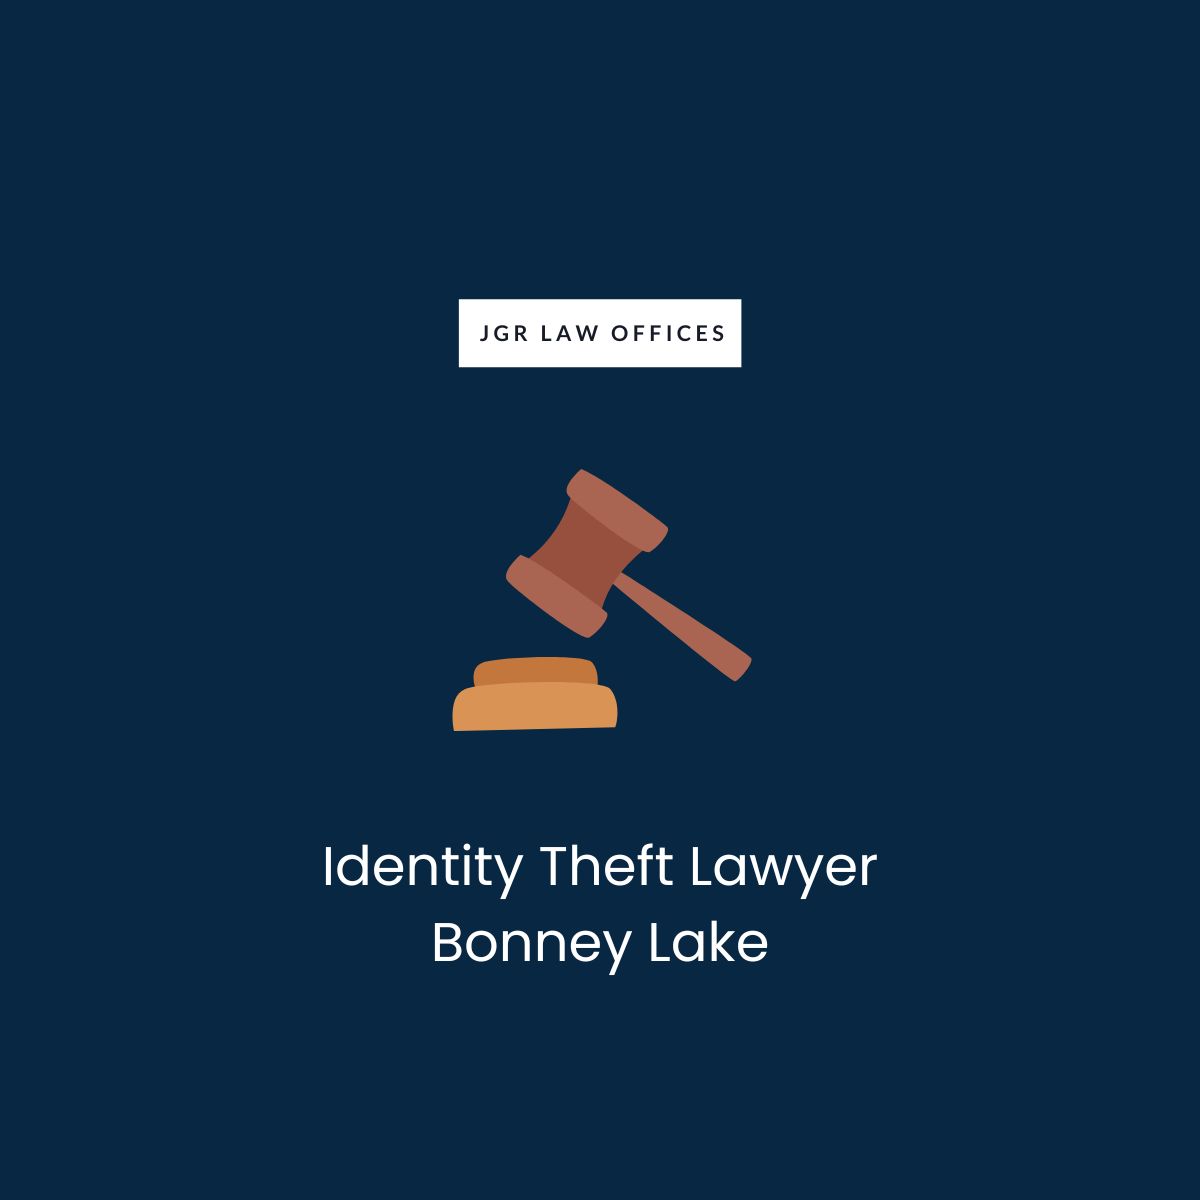 Identity Theft Attorney Bonney Lake Identity Theft Identity Theft